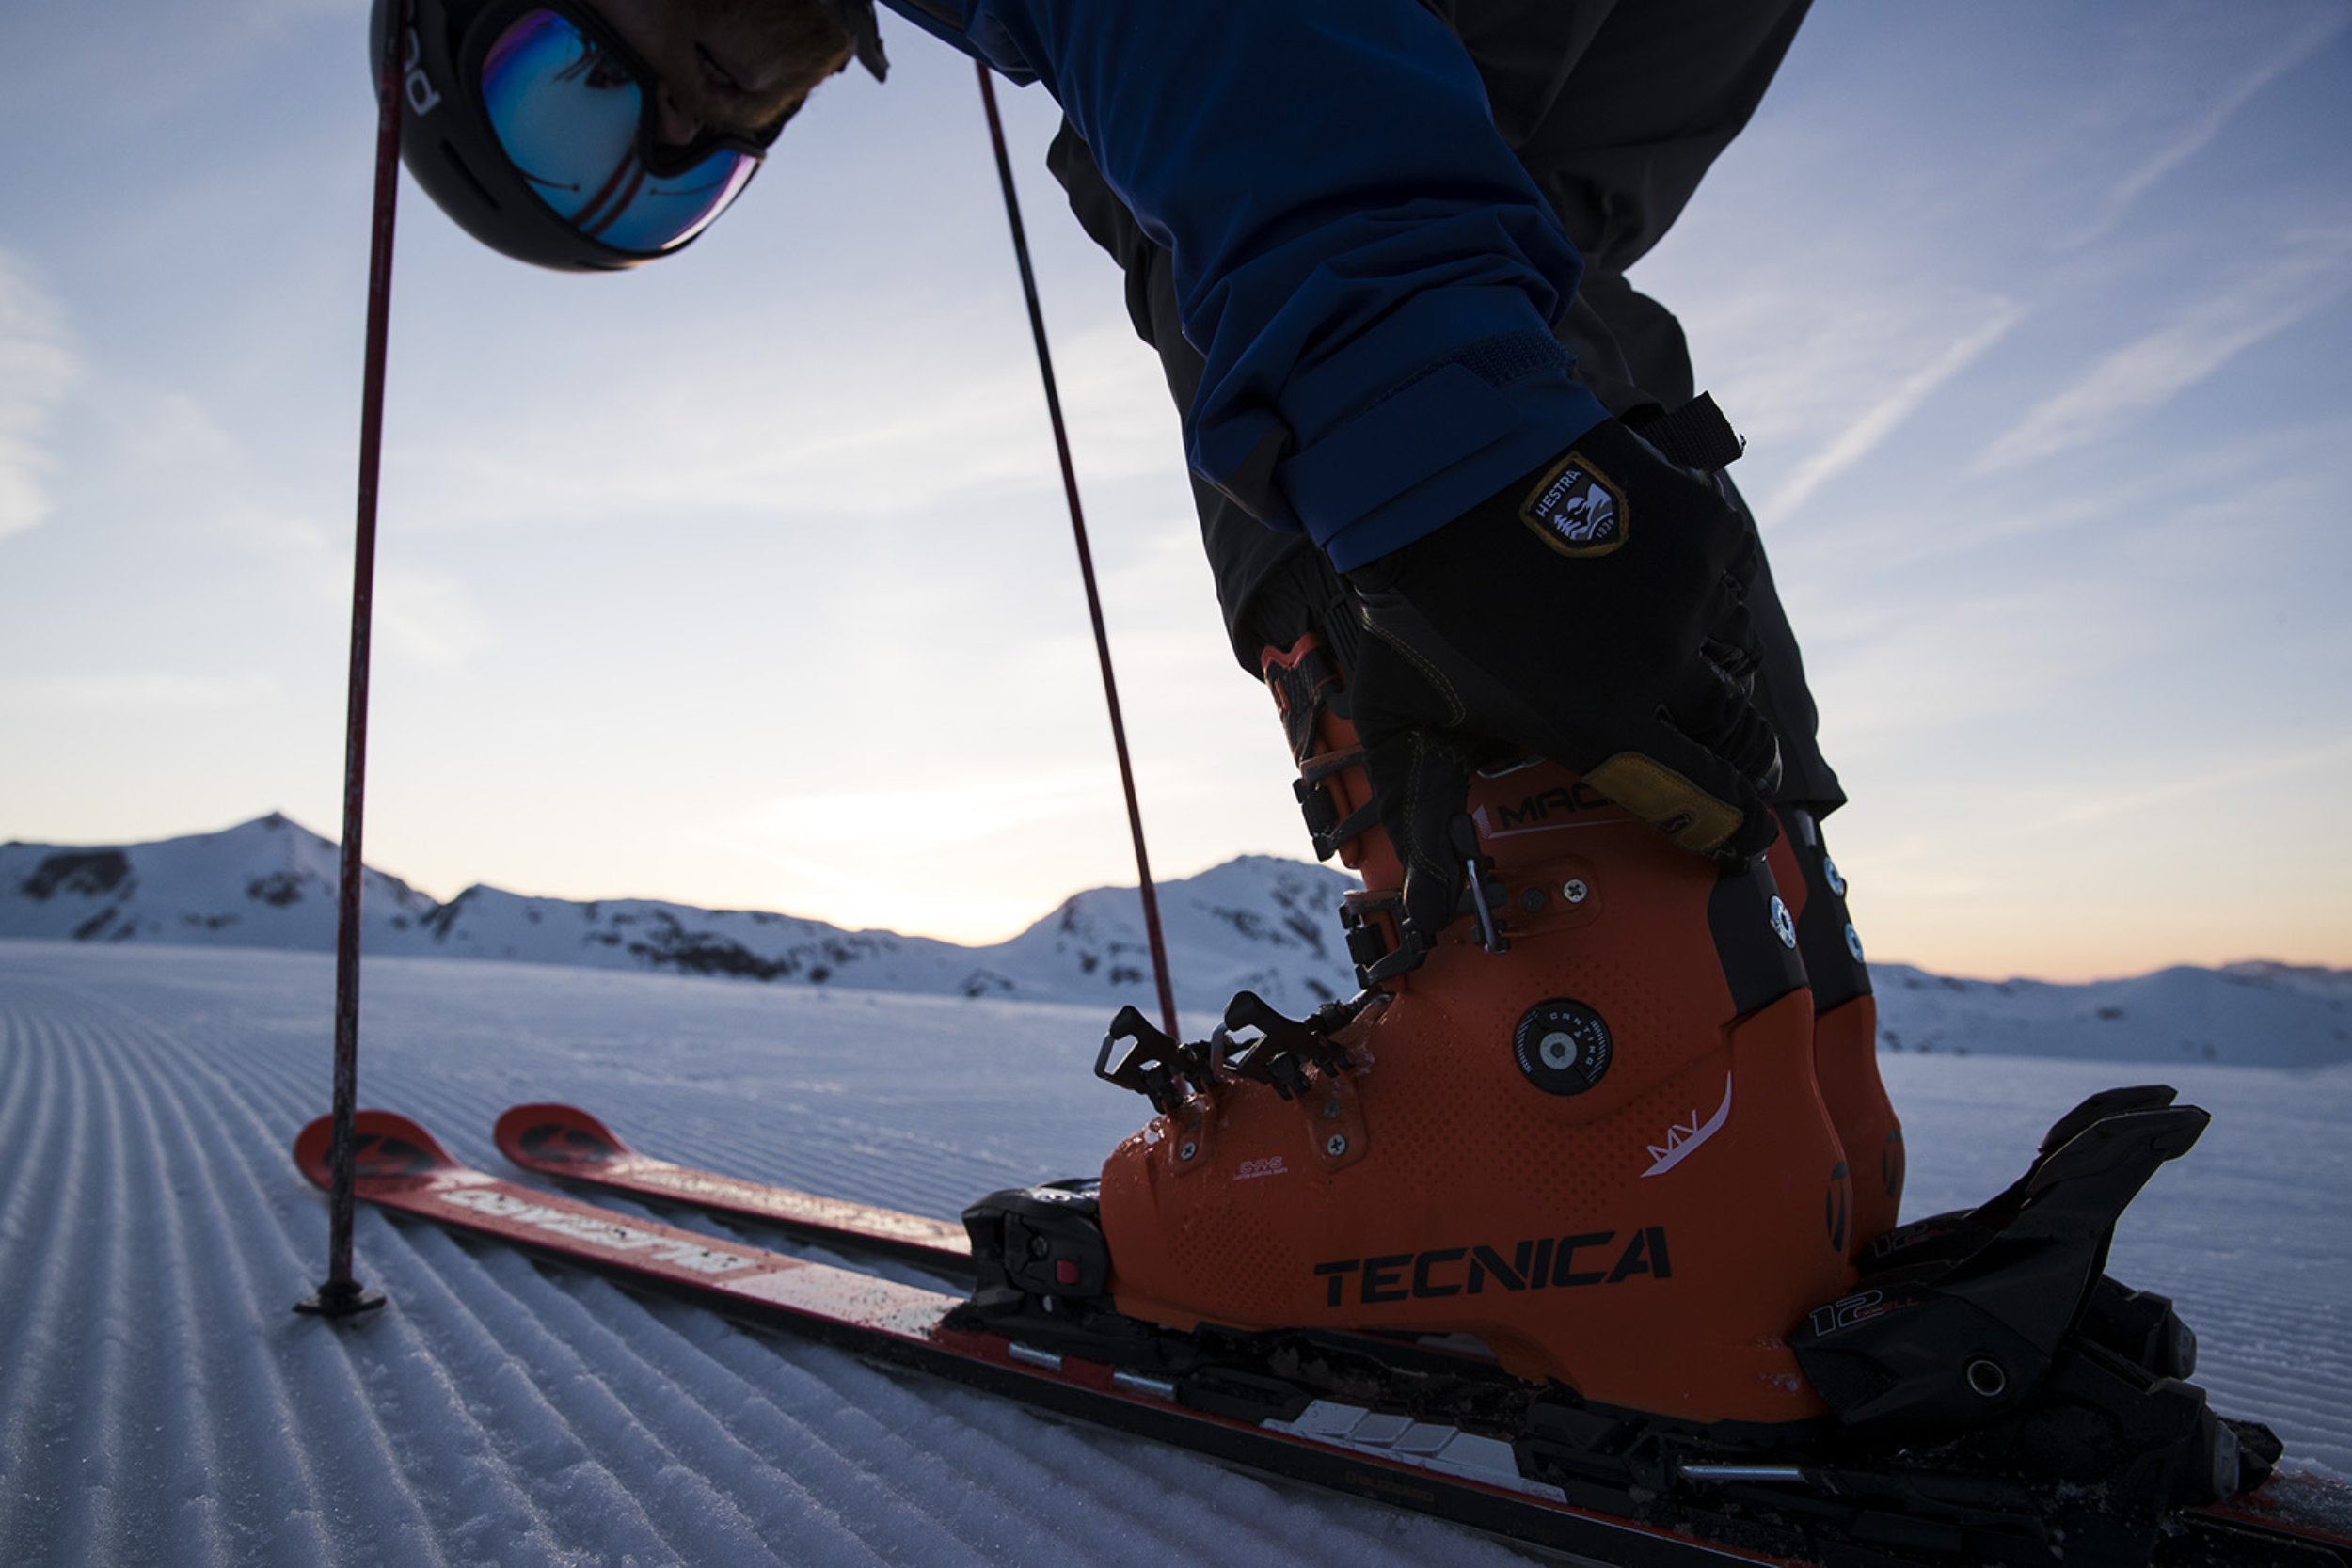 Tecnica Mach1: An den individuellen Fuß anpassbarer Skischuh (c) Tecnica